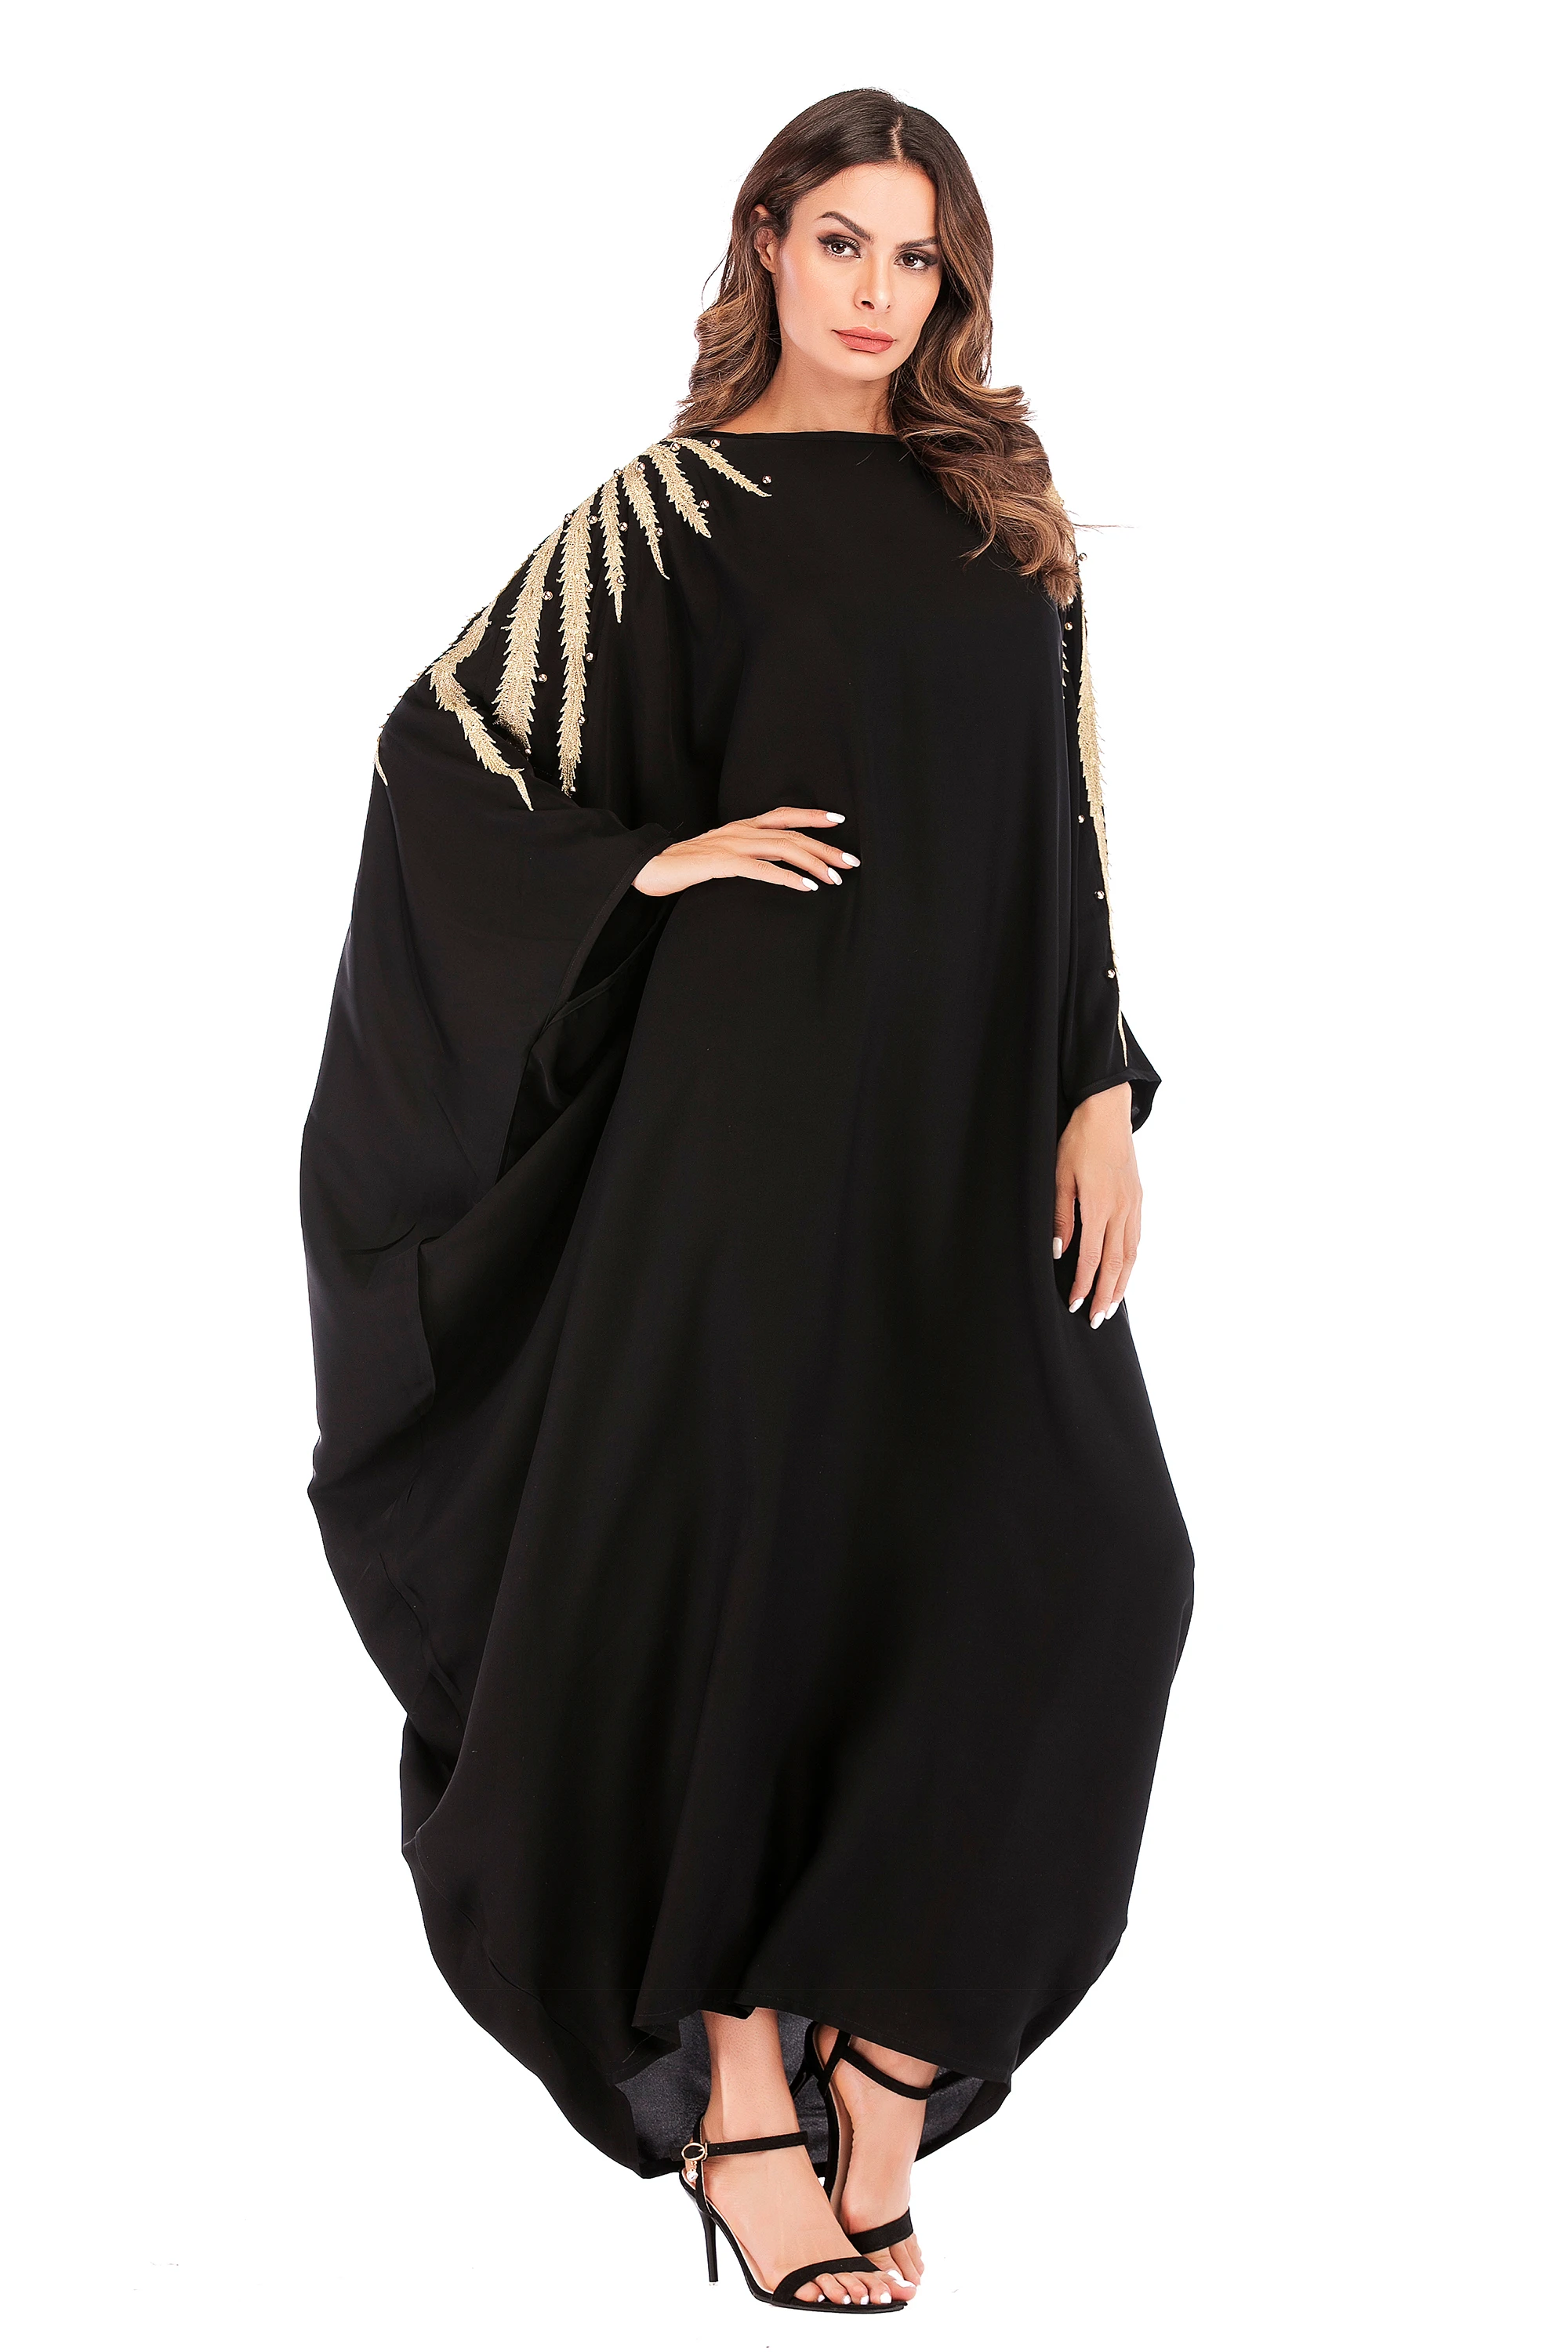 6069# Fashion Embroidery Design Nida Muslim Dress Abaya In Dubai ...